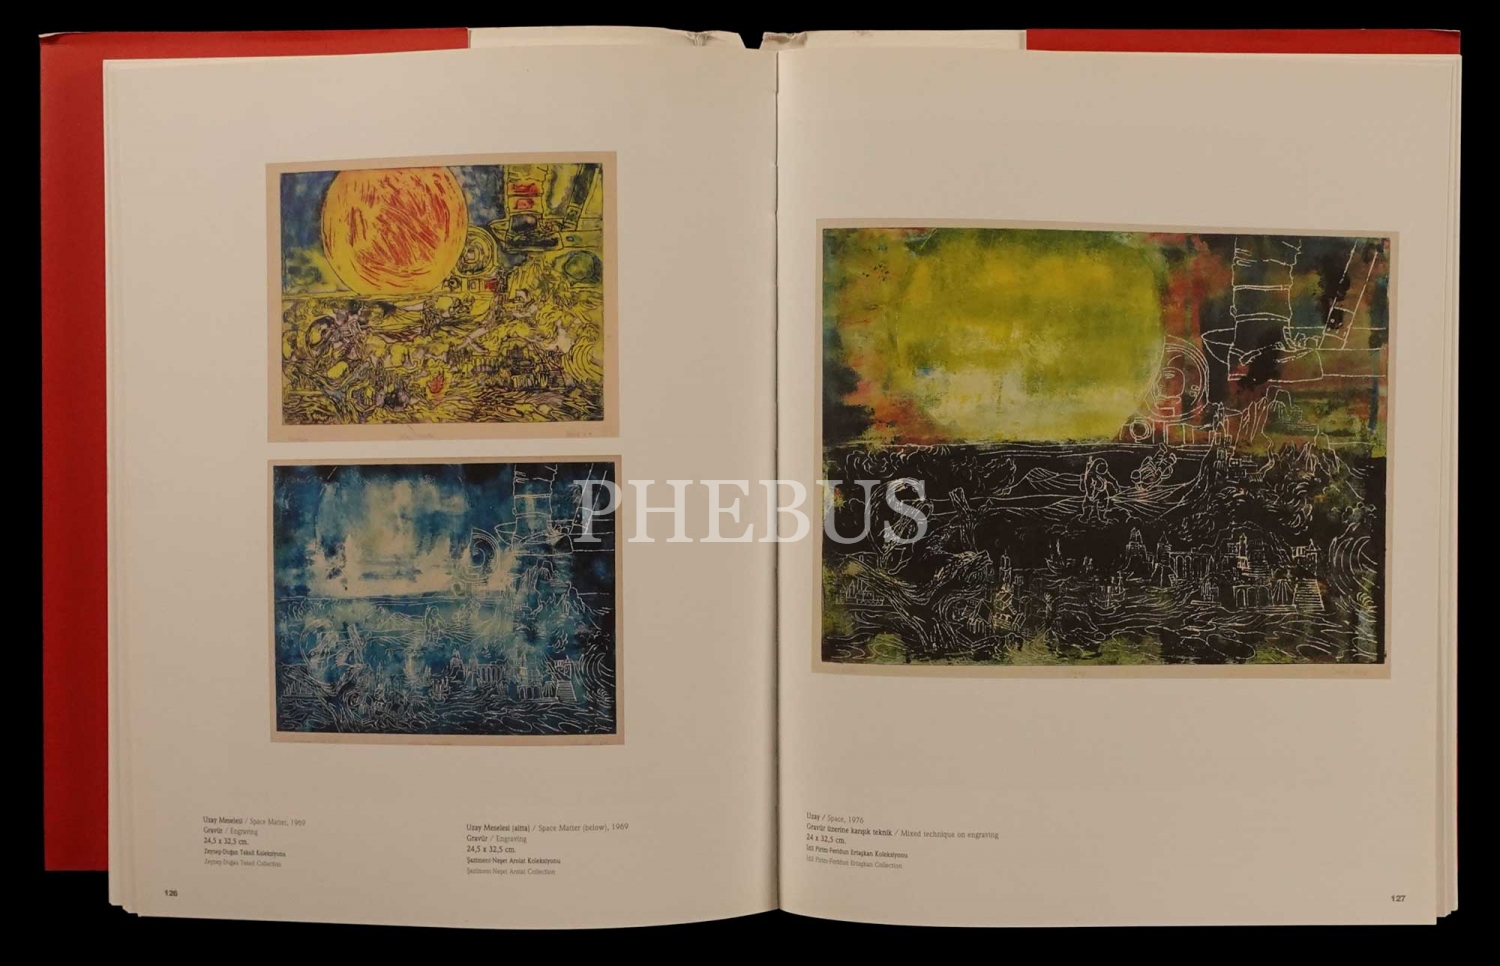 CİHAT BURAK Restospektifi, (yayına hazırlayan: Cem İleri), 2008, İstanbul Modern Sanat Müzesi, 329 sayfa, 23x30 cm...